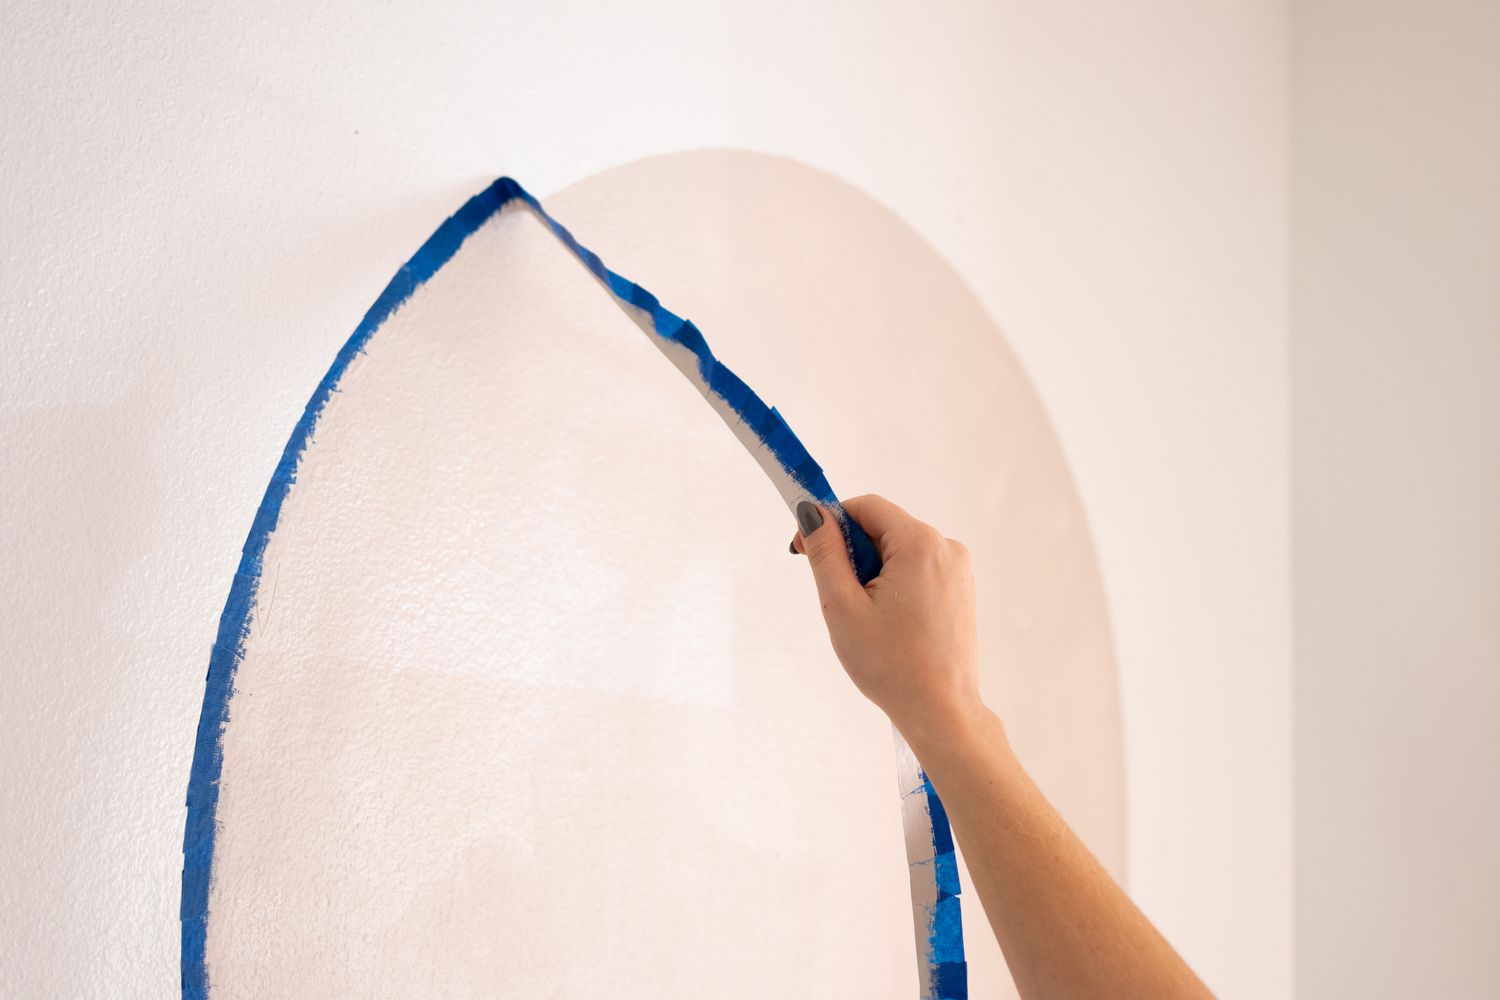 Fita de pintor removida da parede para expor o arco pintado DIY